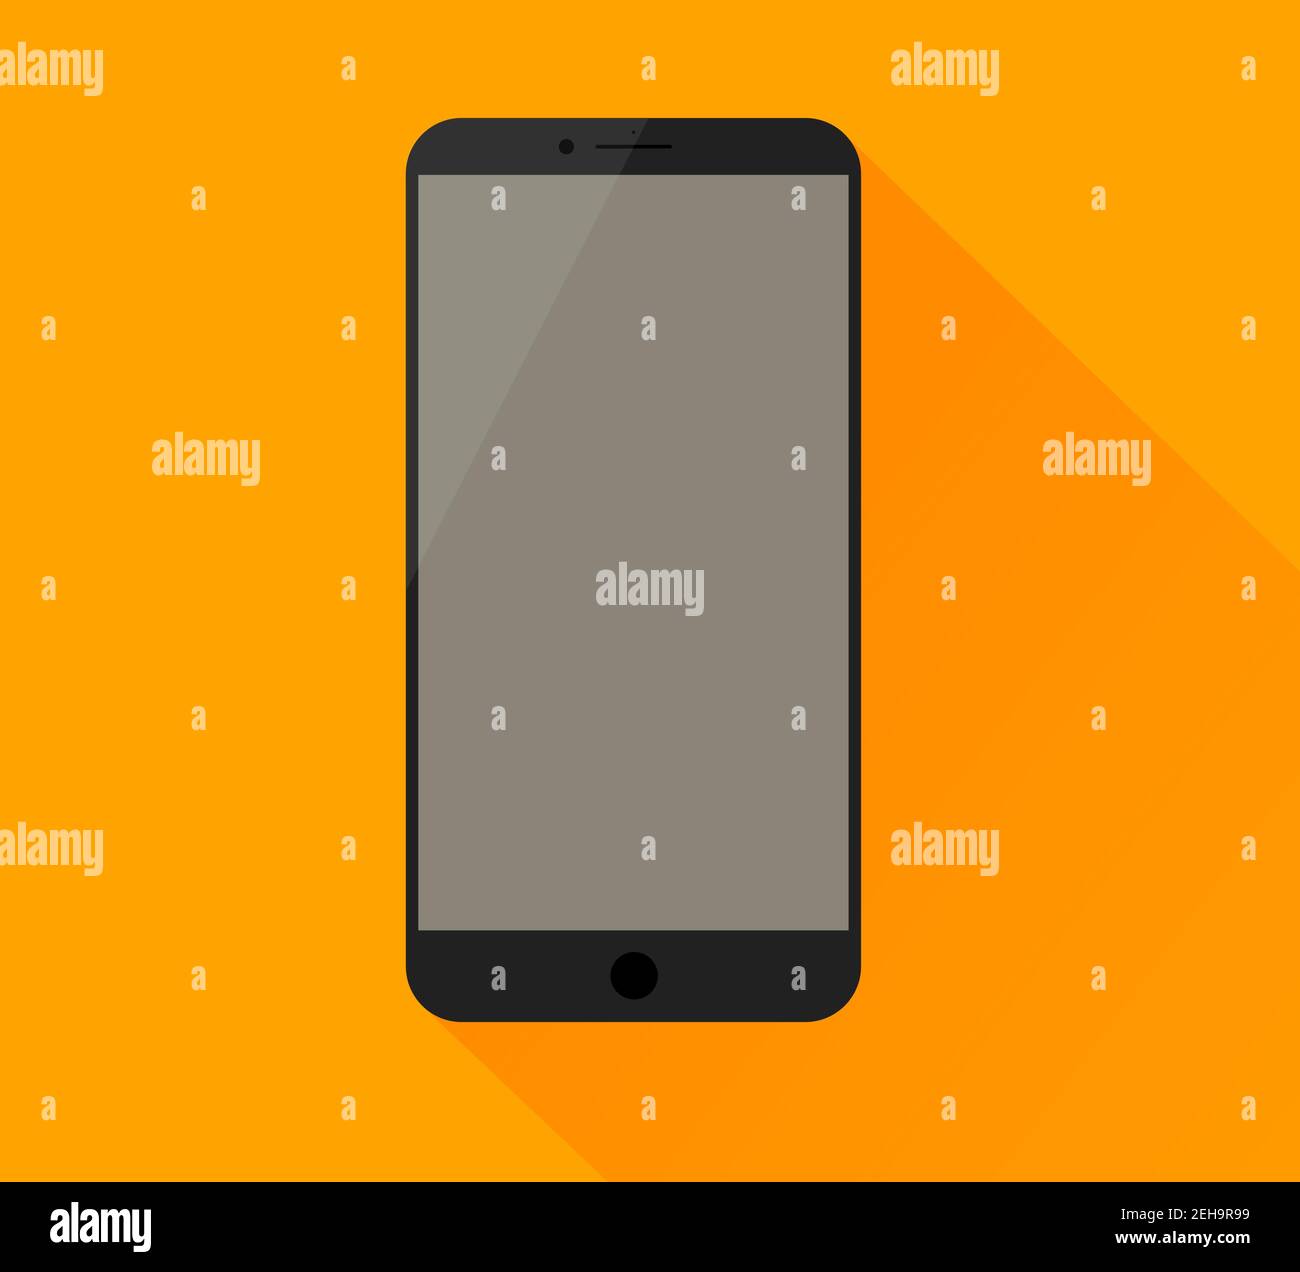 Semplice mockup dello smartphone con schermo vuoto e lampeggio. Ombra chiara e sfondo giallo. Illustrazione Vettoriale